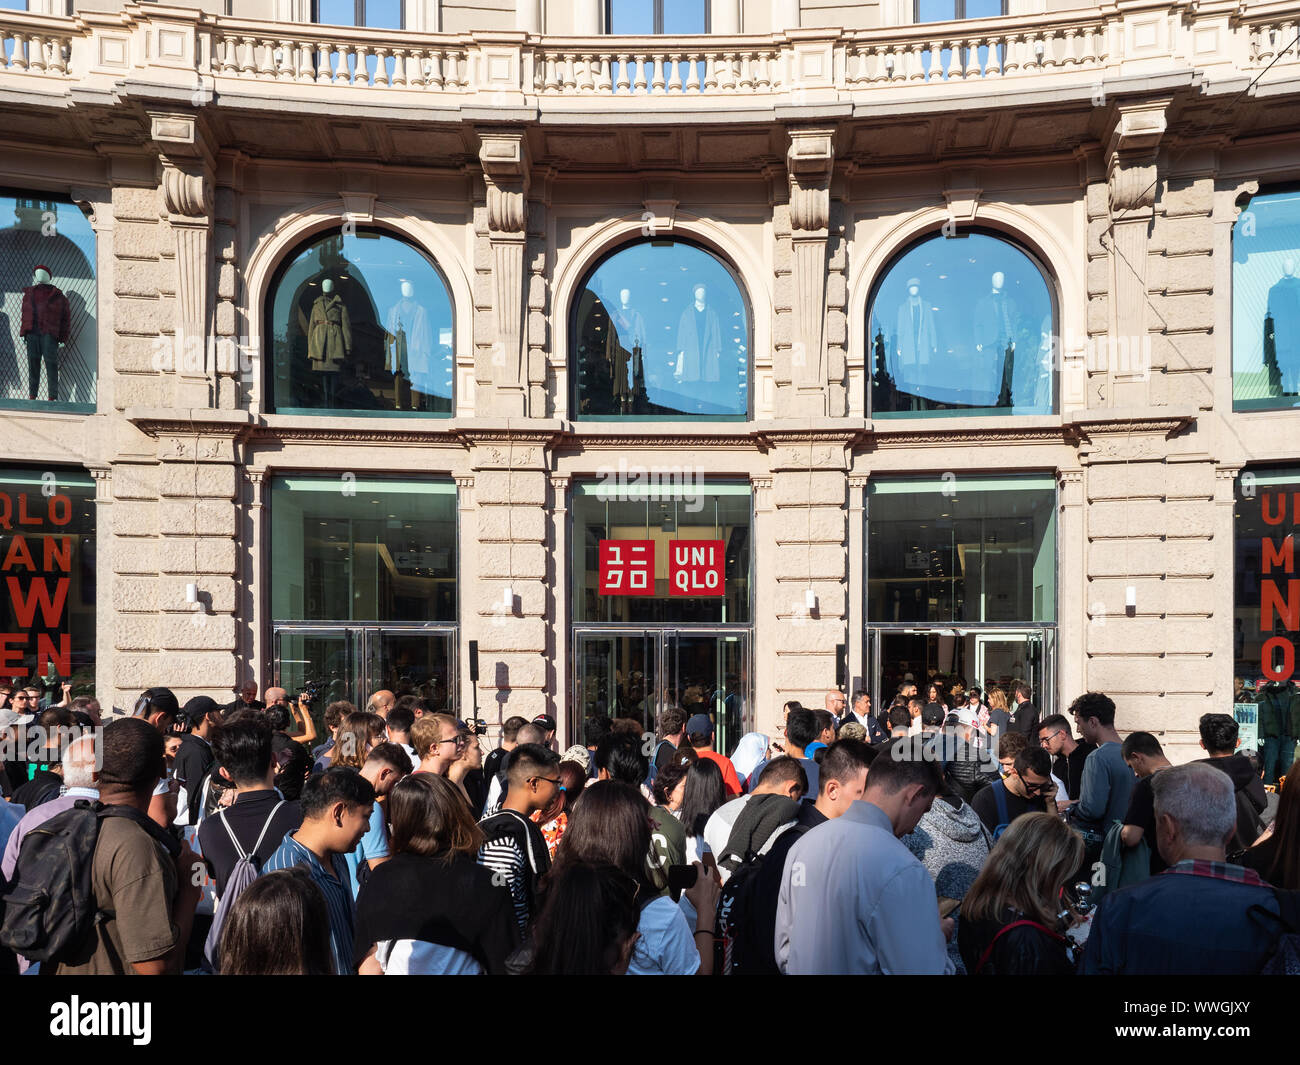 Piazza Cordusio, Milan, Italie - 13 septembre, 2019 rassemble les foules  devant le nouveau magasin Uniqlo l'attente d'ouvrir les portes Photo Stock  - Alamy